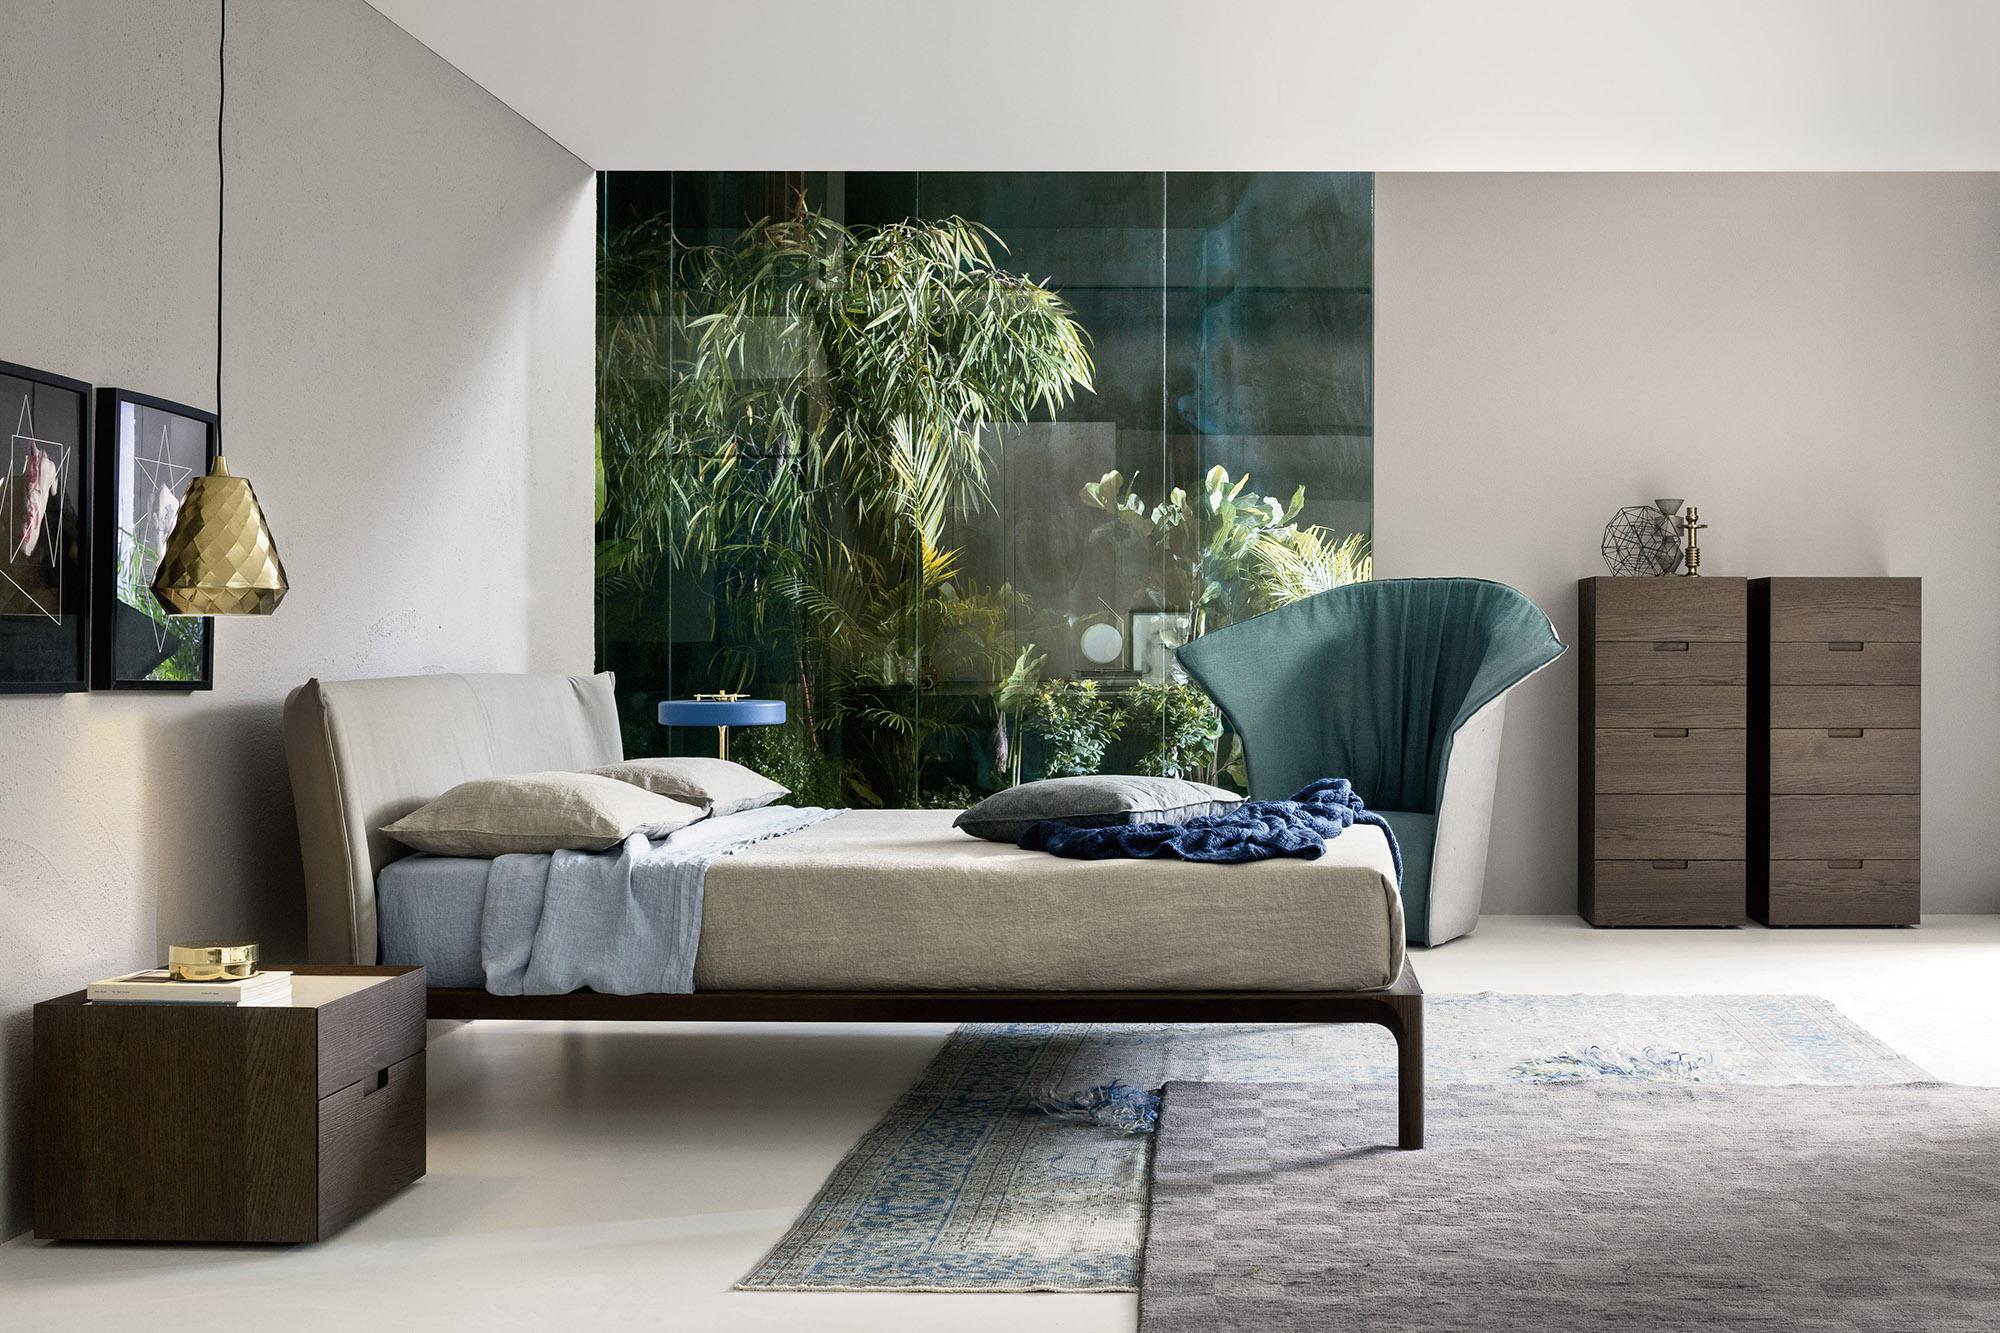 Modernes DEsign Schlafzimmer #bett #teppich #sessel #kommode #nachttisch ©Livarea.de